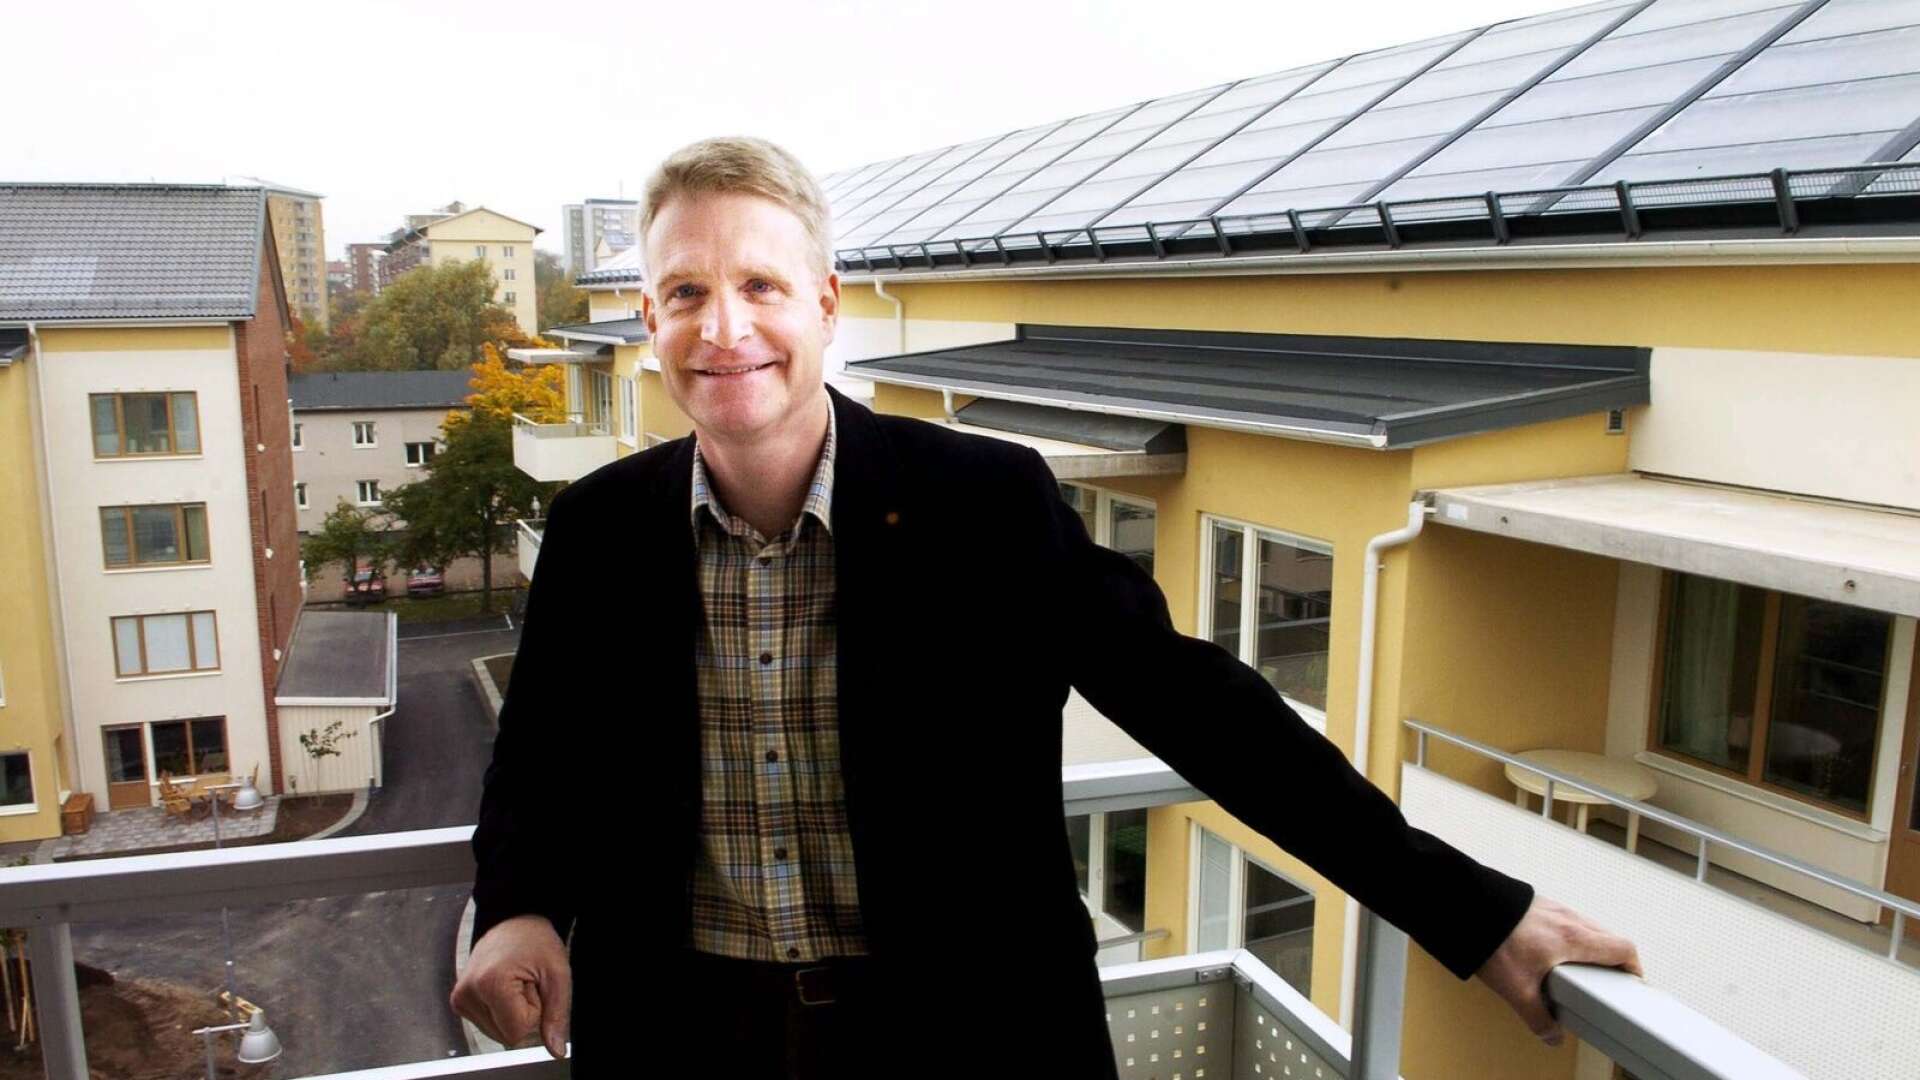 Mats Enmark var vd för KBAB när beslutet om att bygga de flytande bostäderna i Mariebergsviken togs. ”Varje gång jag kör förbi dem blir jag glad att vi vågade göra detta”, säger han.